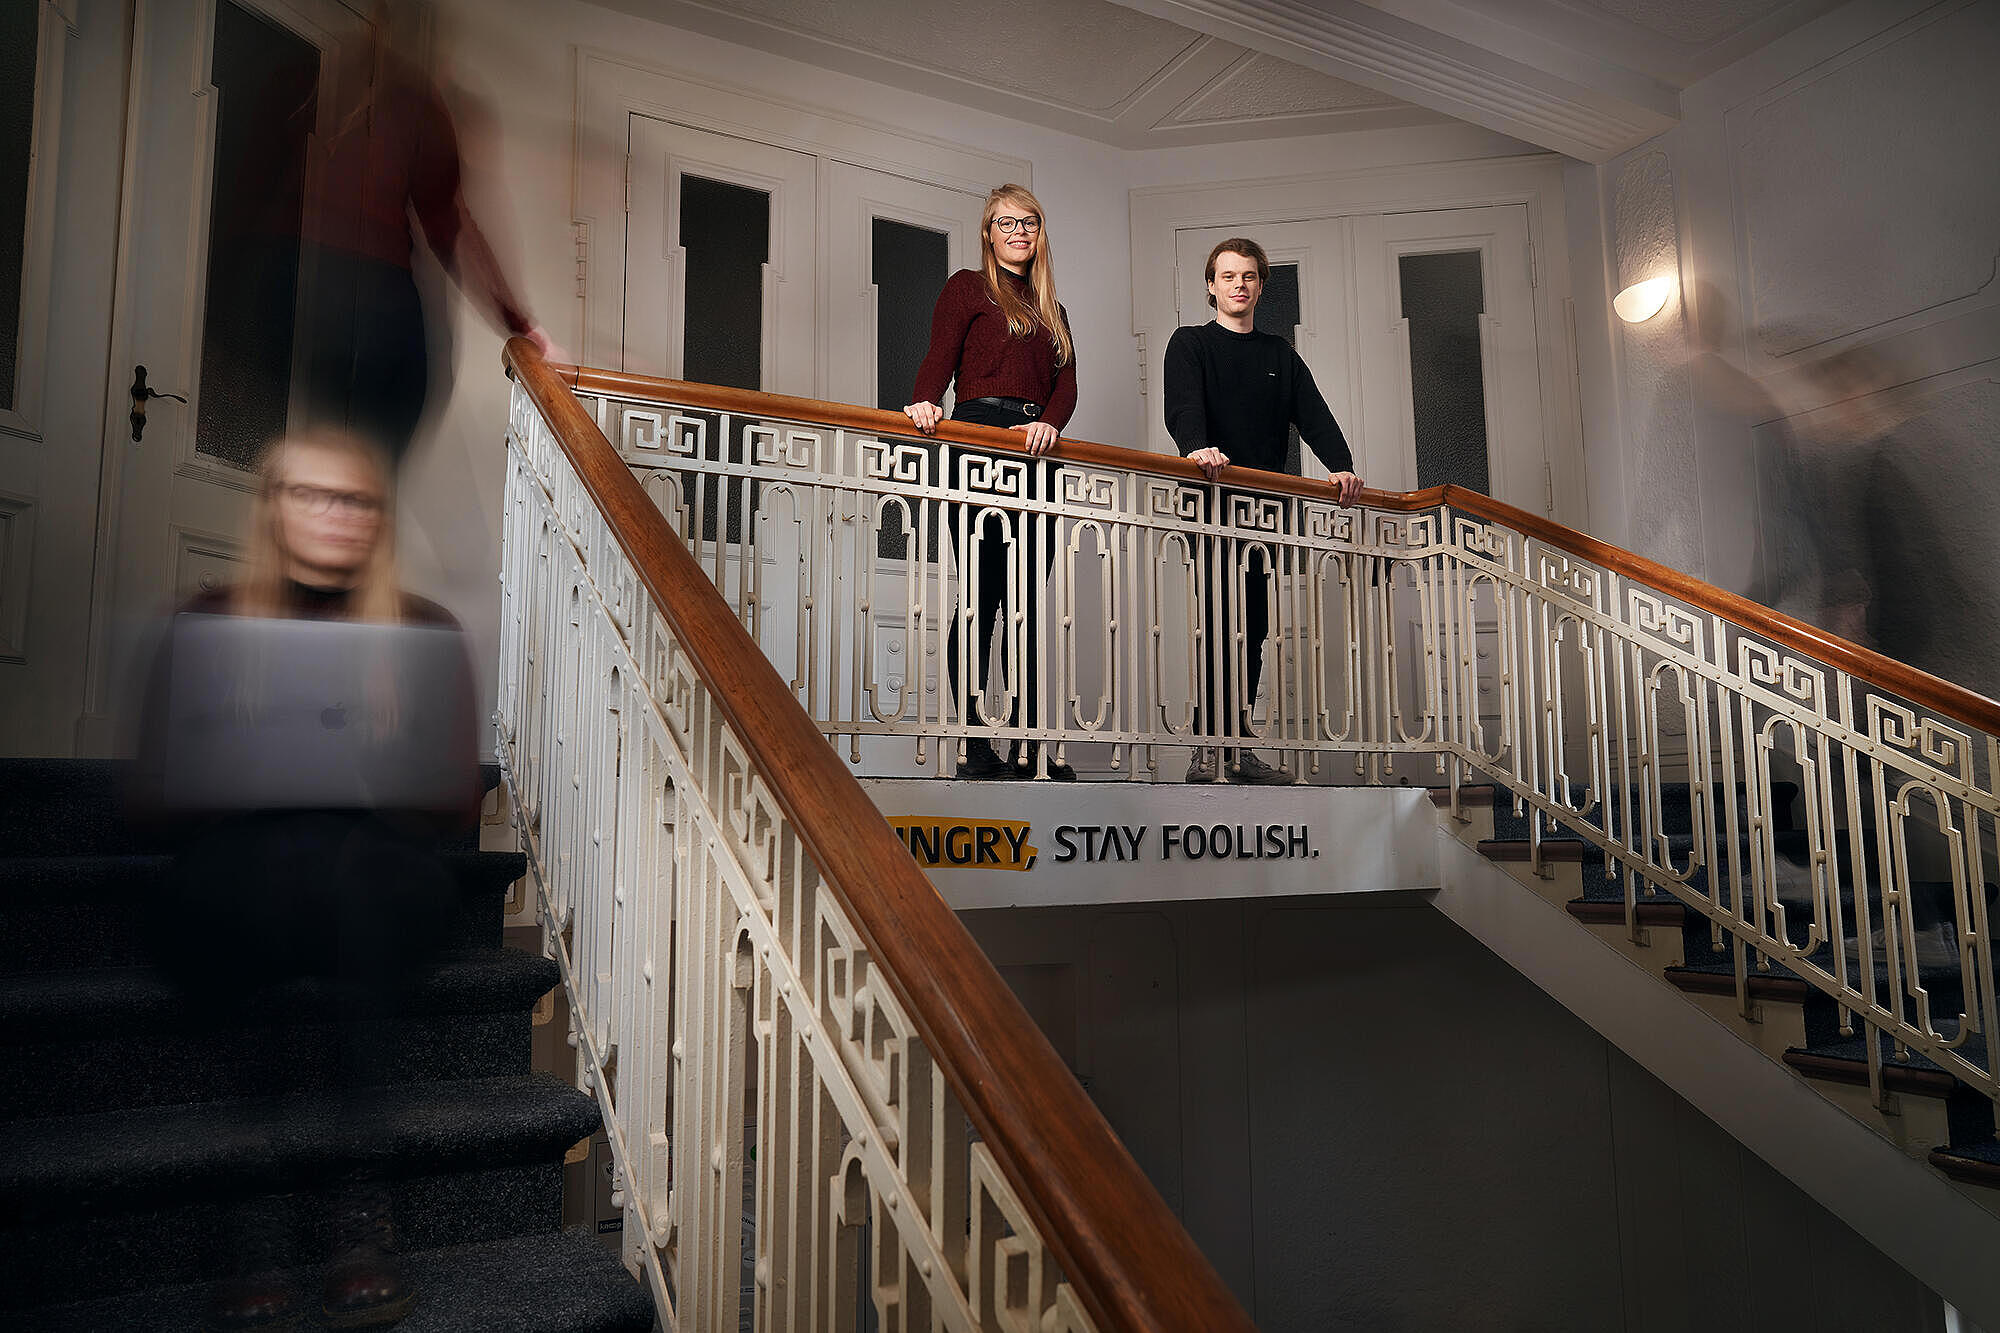 Aufnahme der beiden Werkstudierenden bei visuellverstehen, die im Treppenhaus selbstbewusst am Geländer lehnen, während im Zeitraffer aufgenommene Abbilder von ihnen die Treppen hoch und runter laufen.